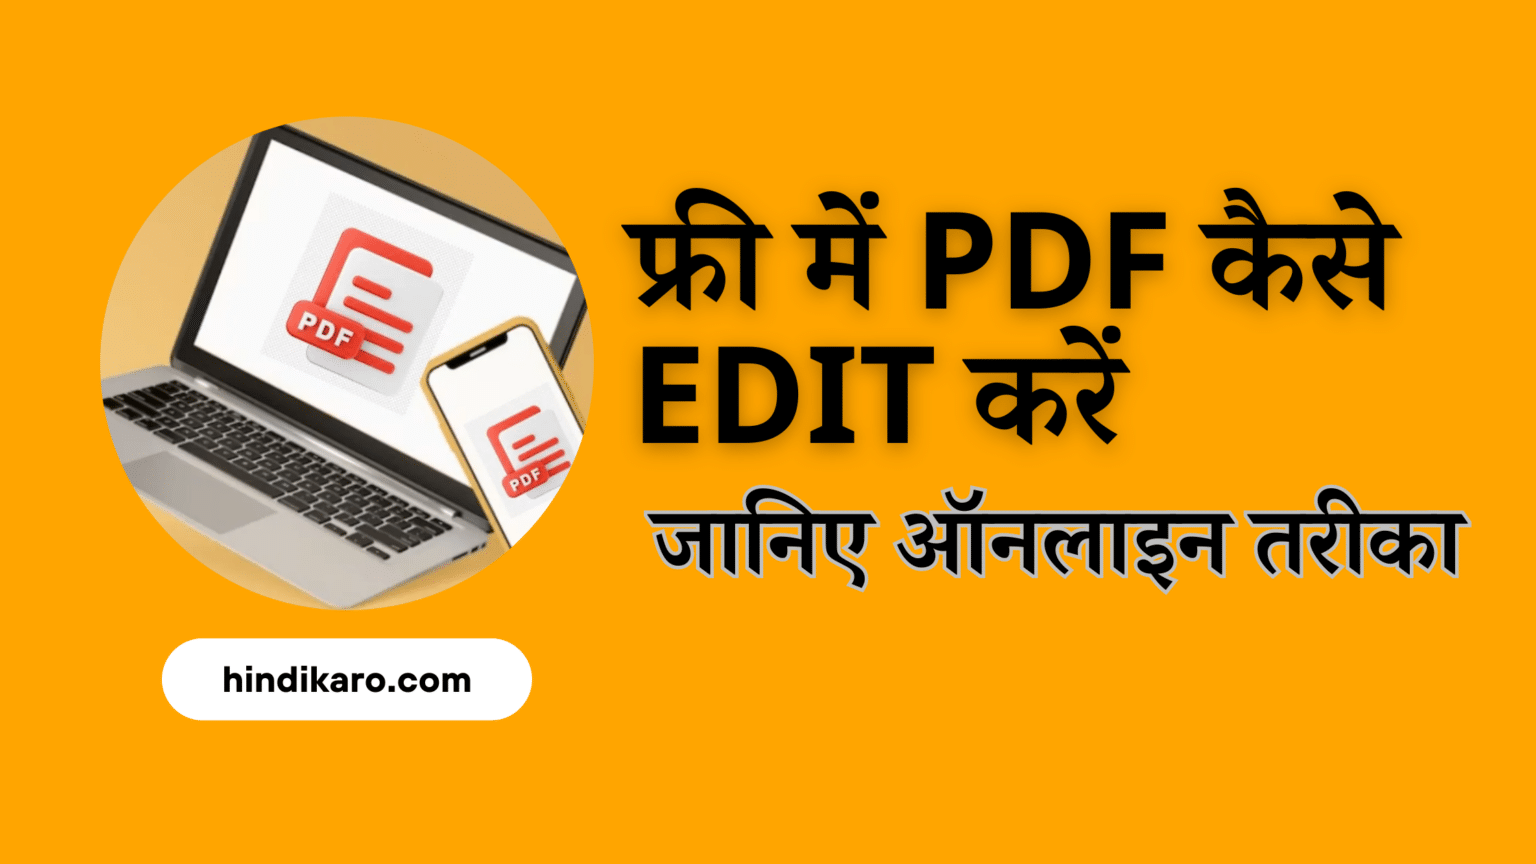 फ्री में PDF कैसे Edit करें: जानिए ऑनलाइन तरीका